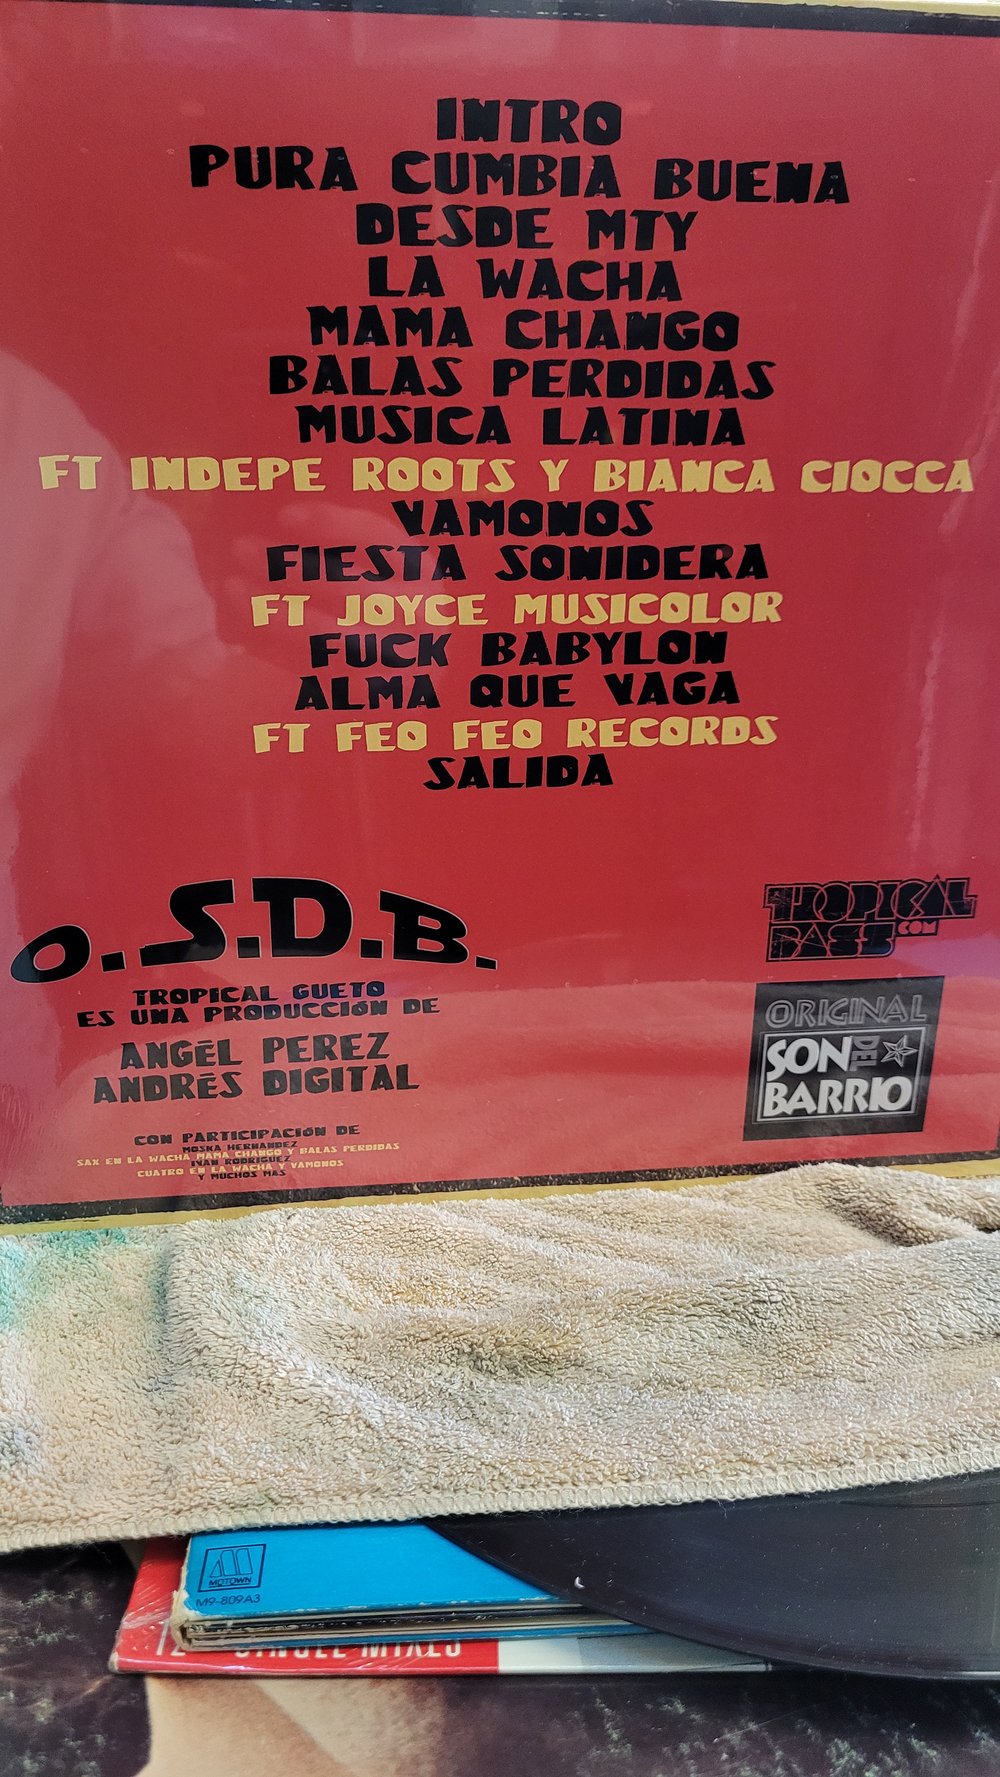 Son del Barrio. Tropical Gueta LP